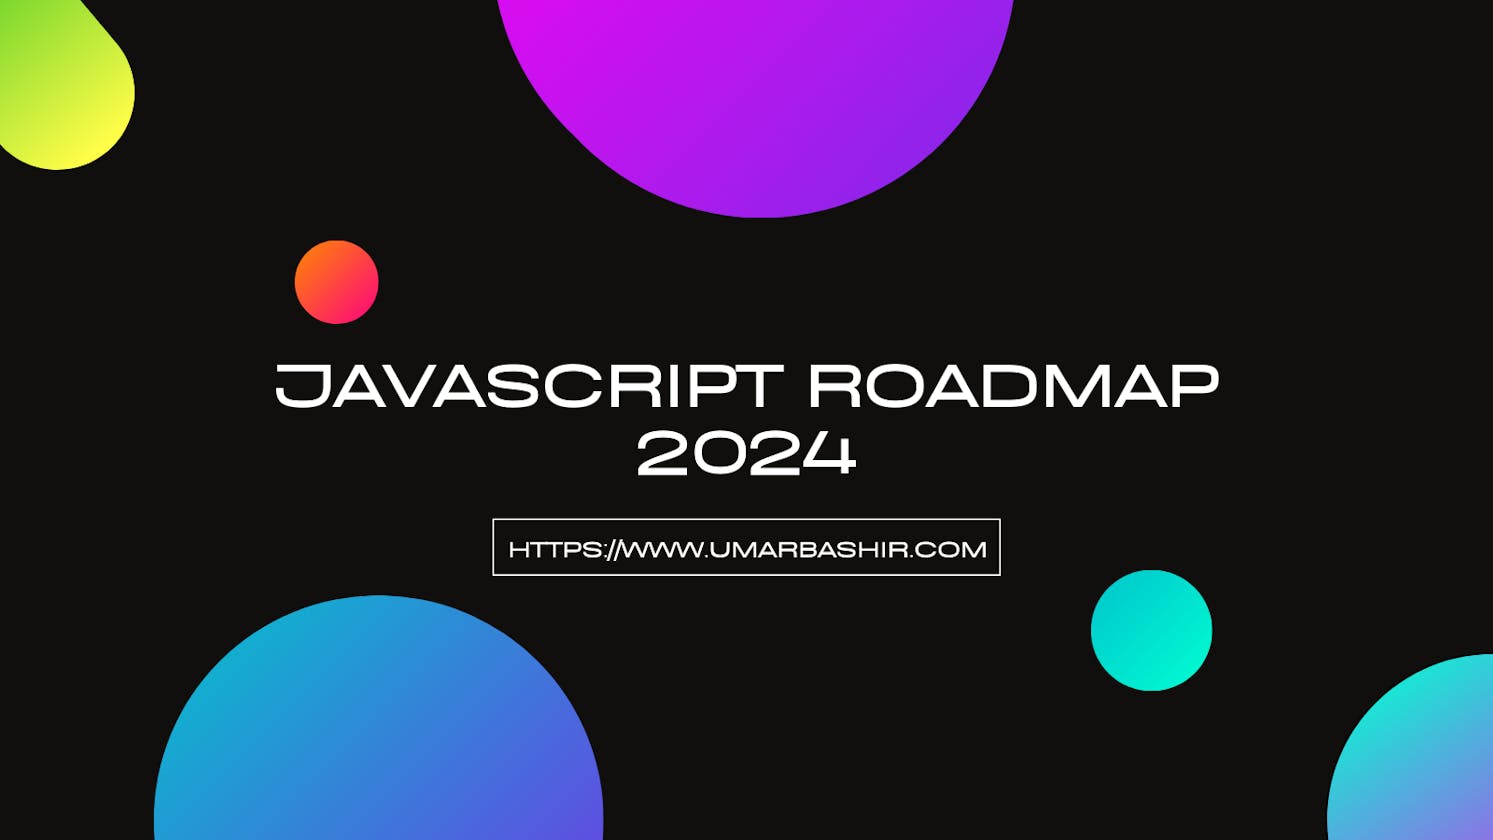 Roadmap to Learn JavaScript in 2024